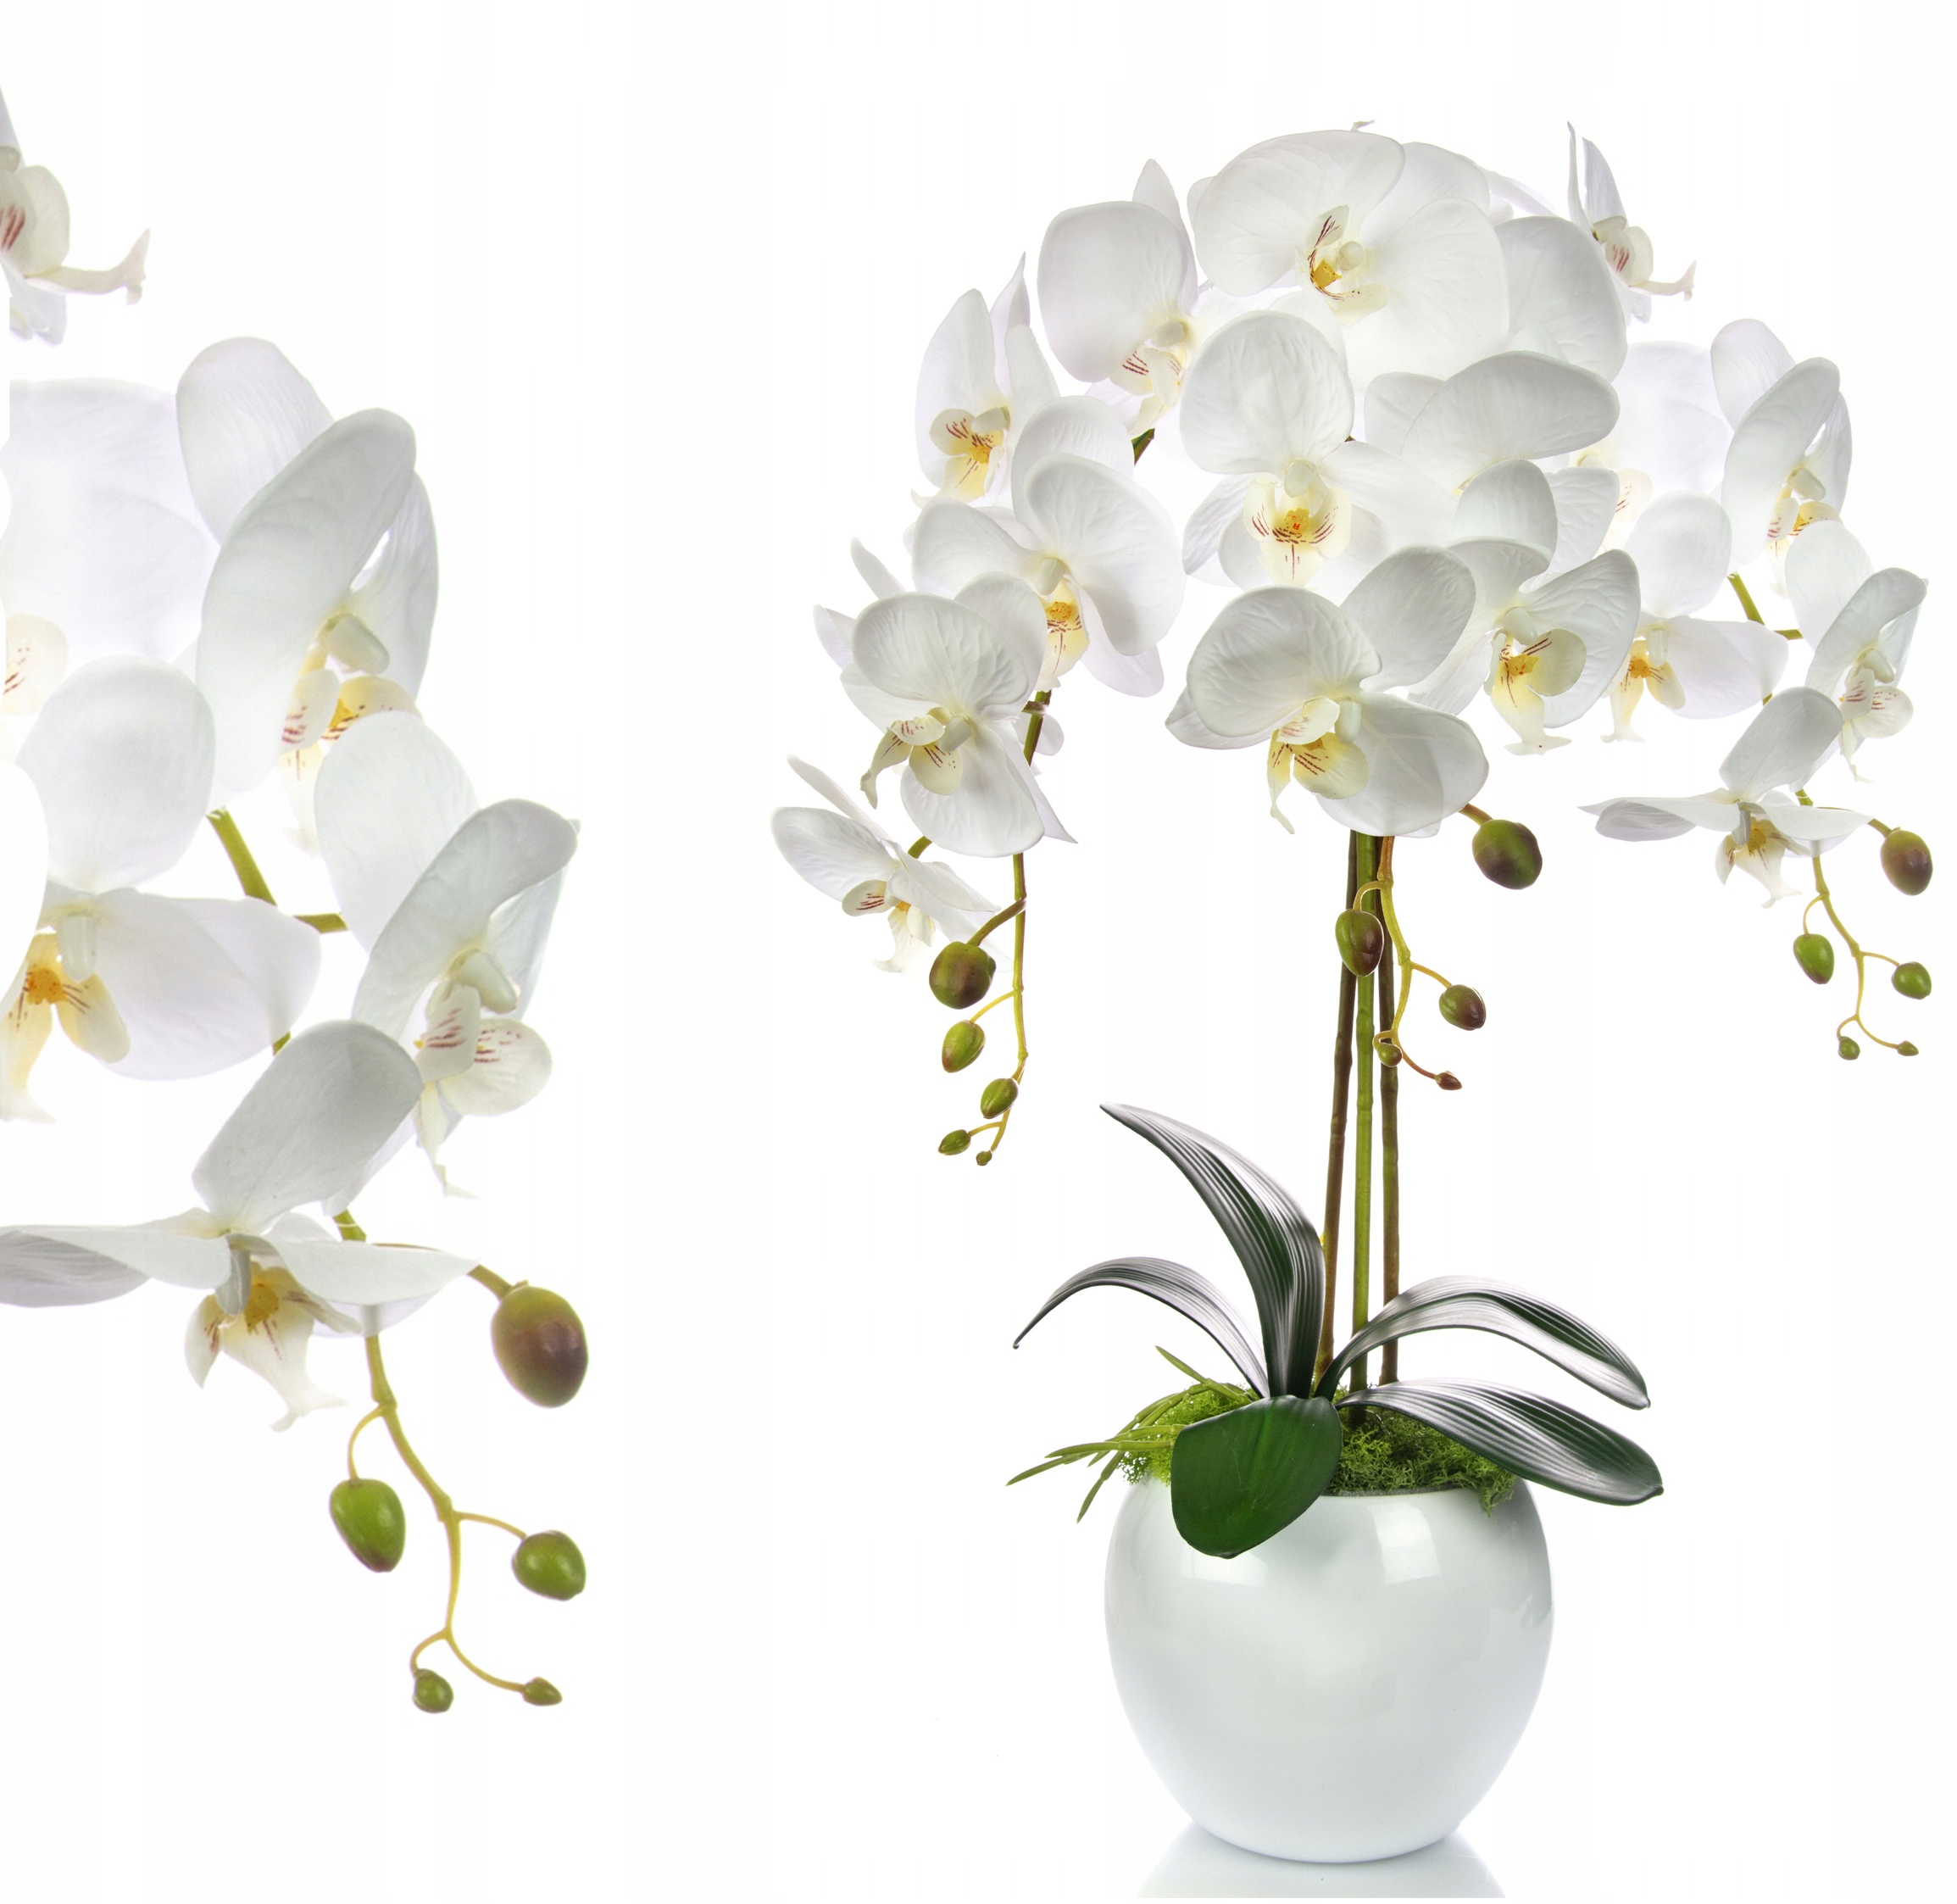 Орхидея белая136001cr